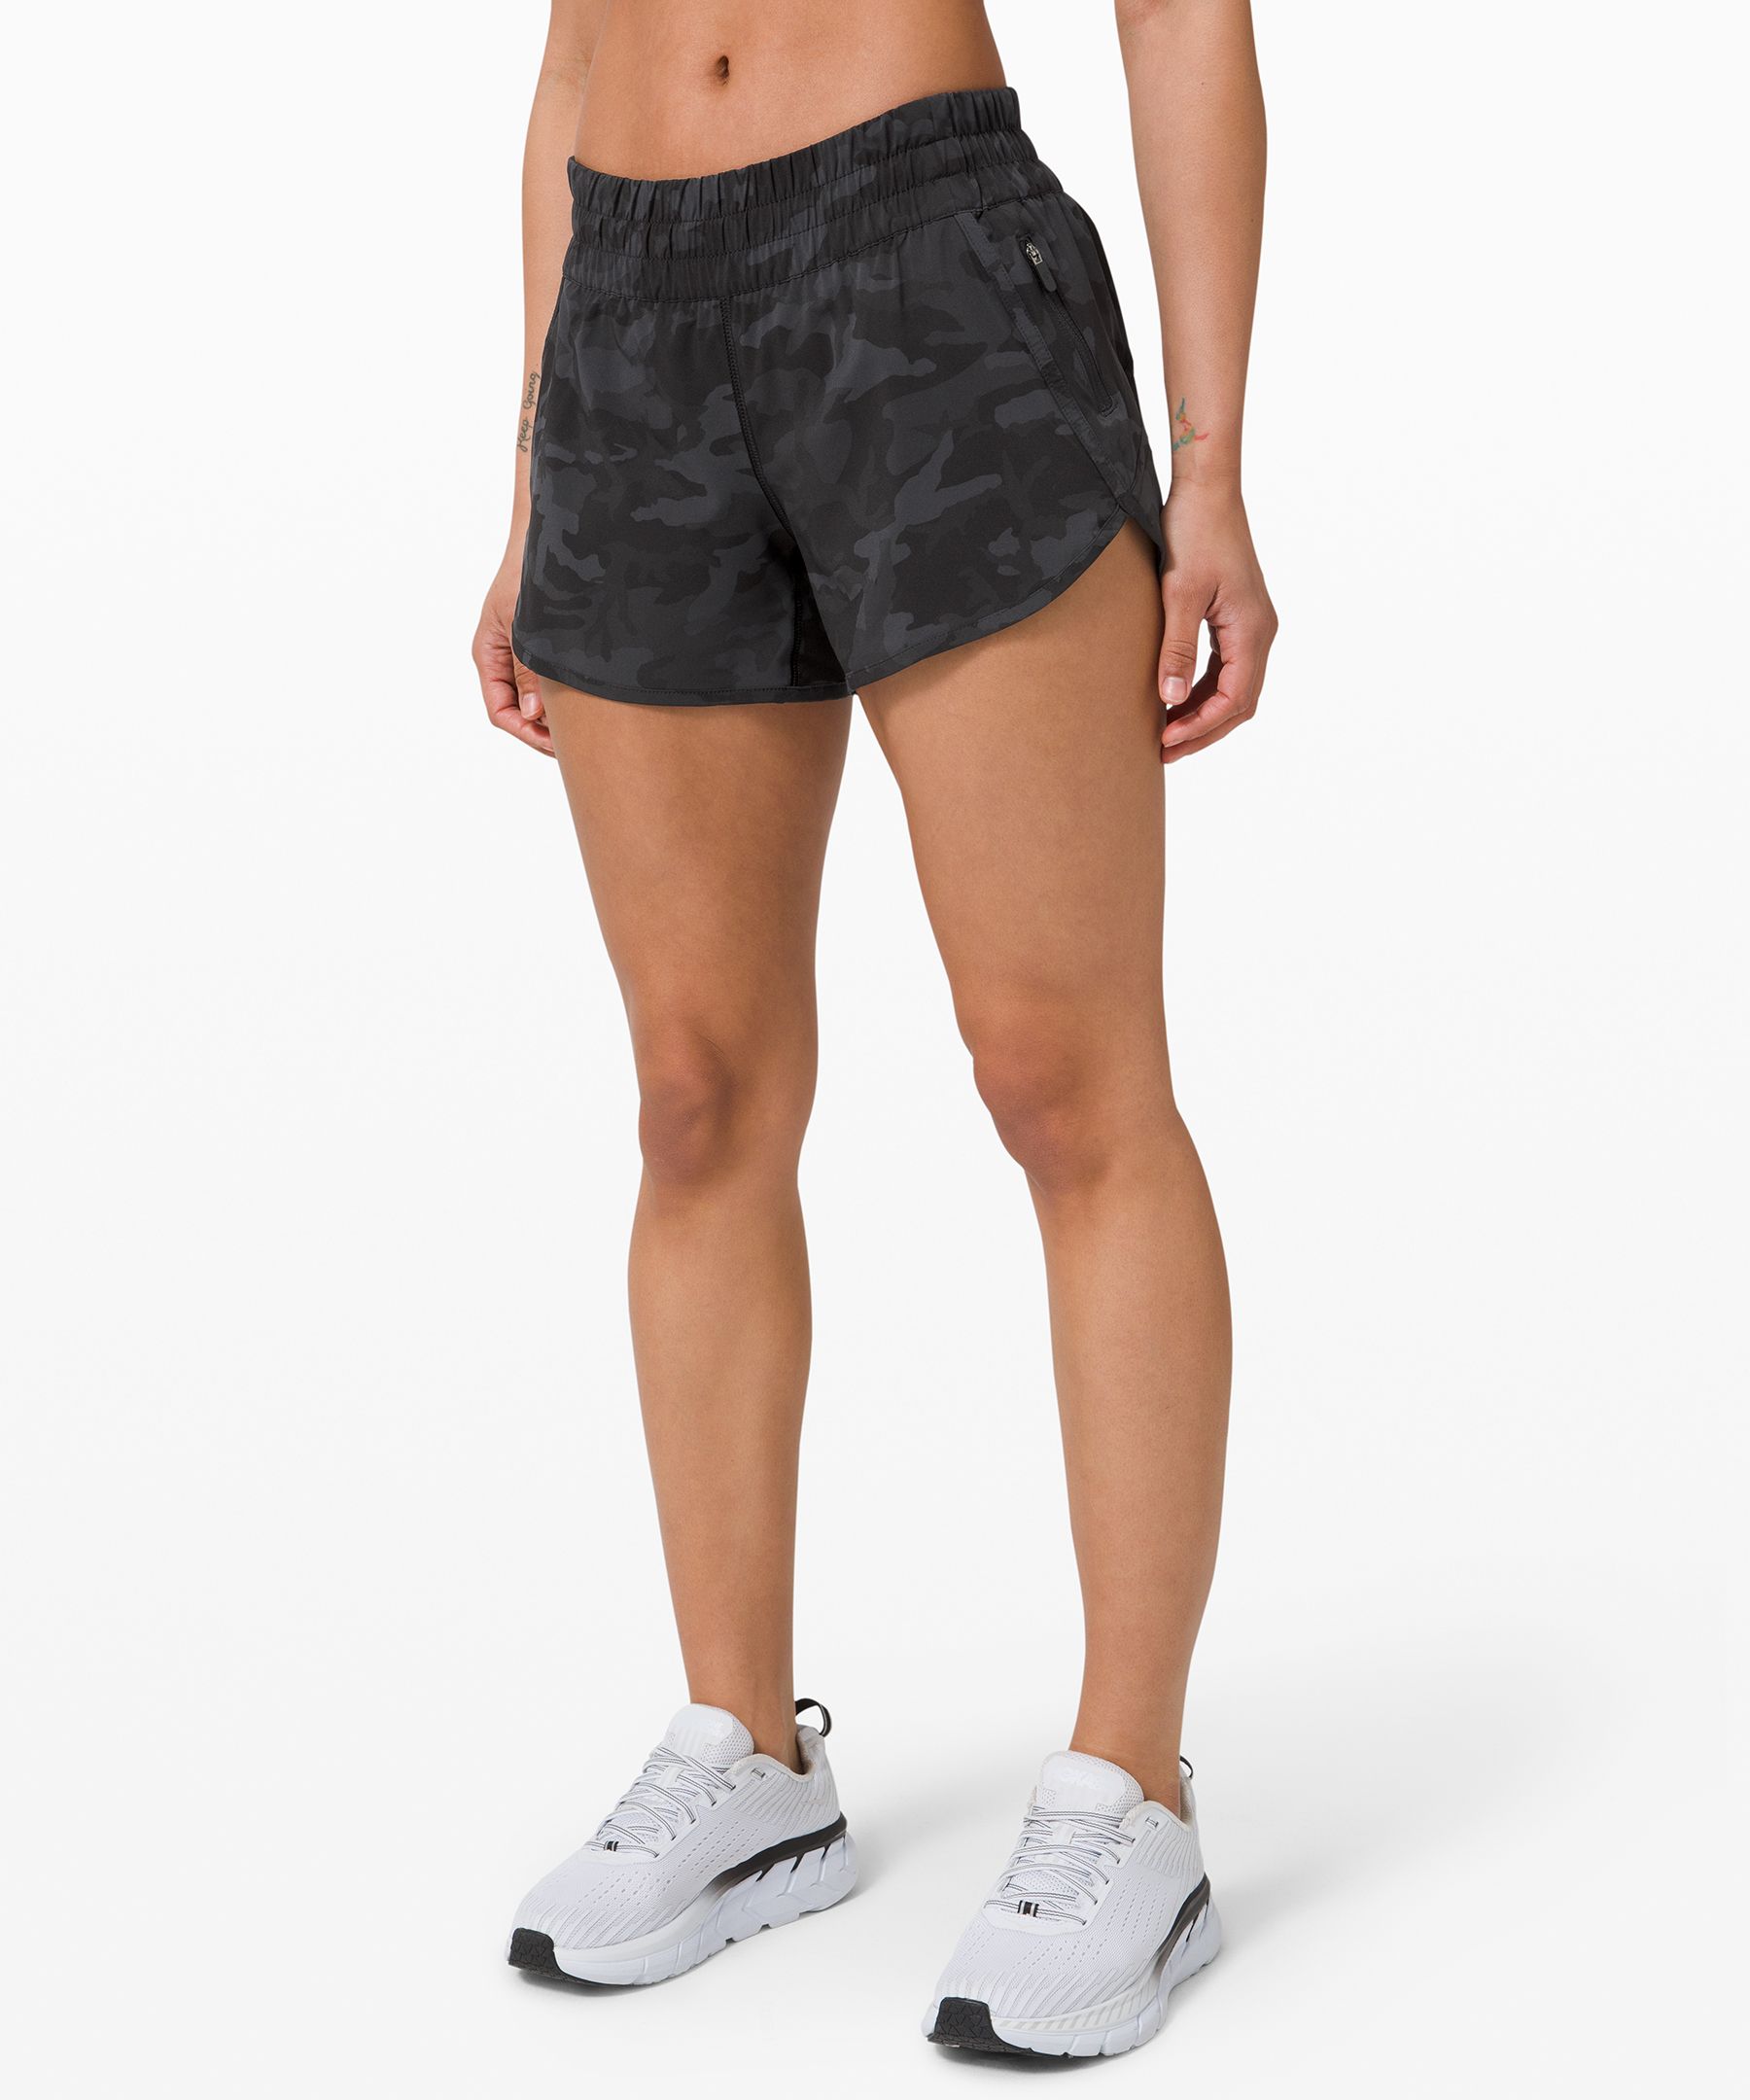 lululemon tracker shorts